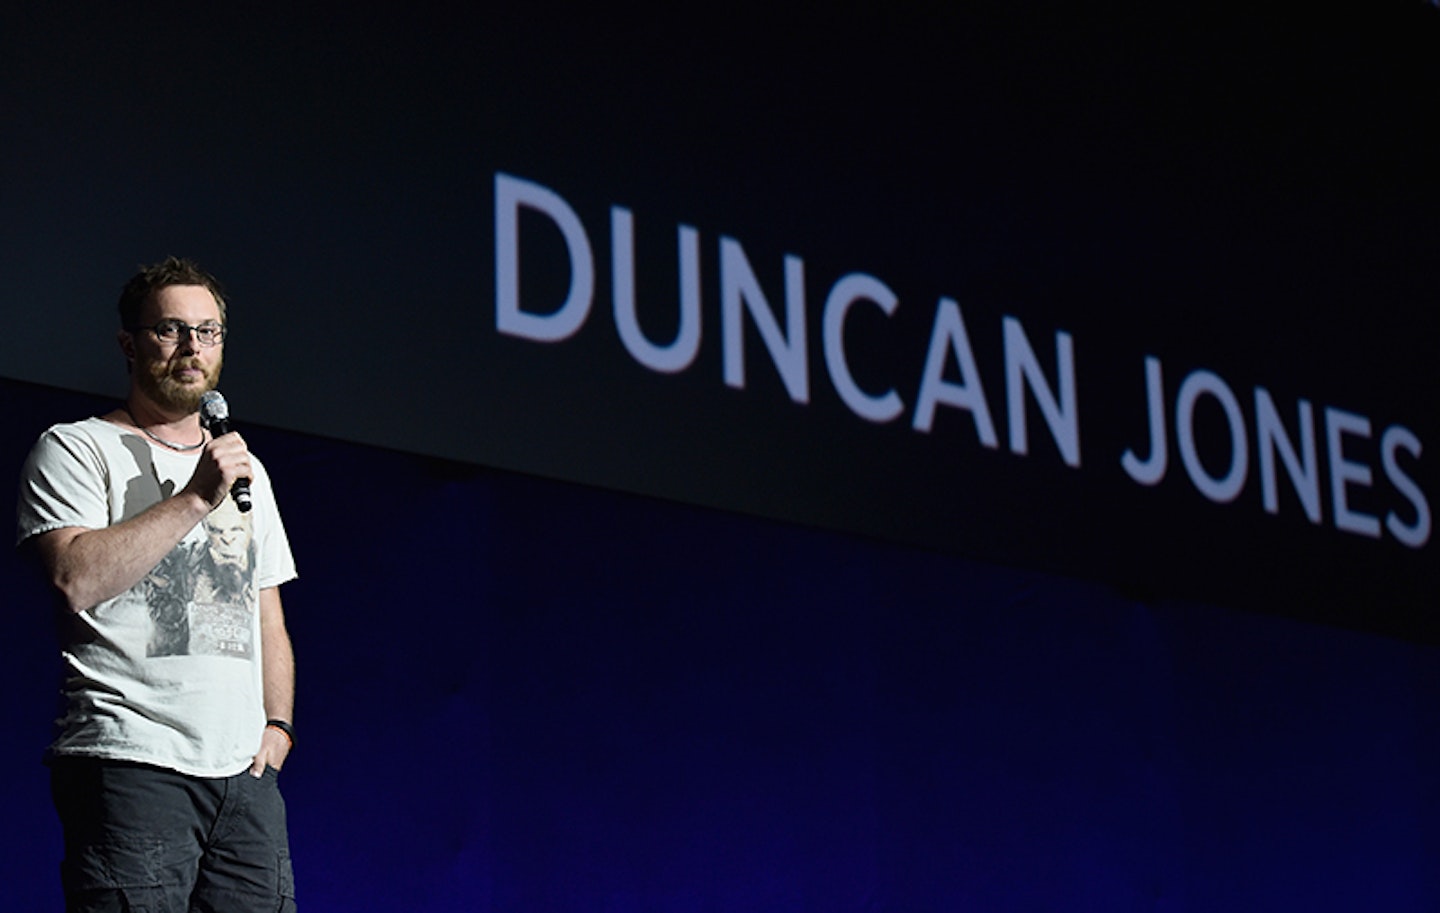 Duncan-Jones